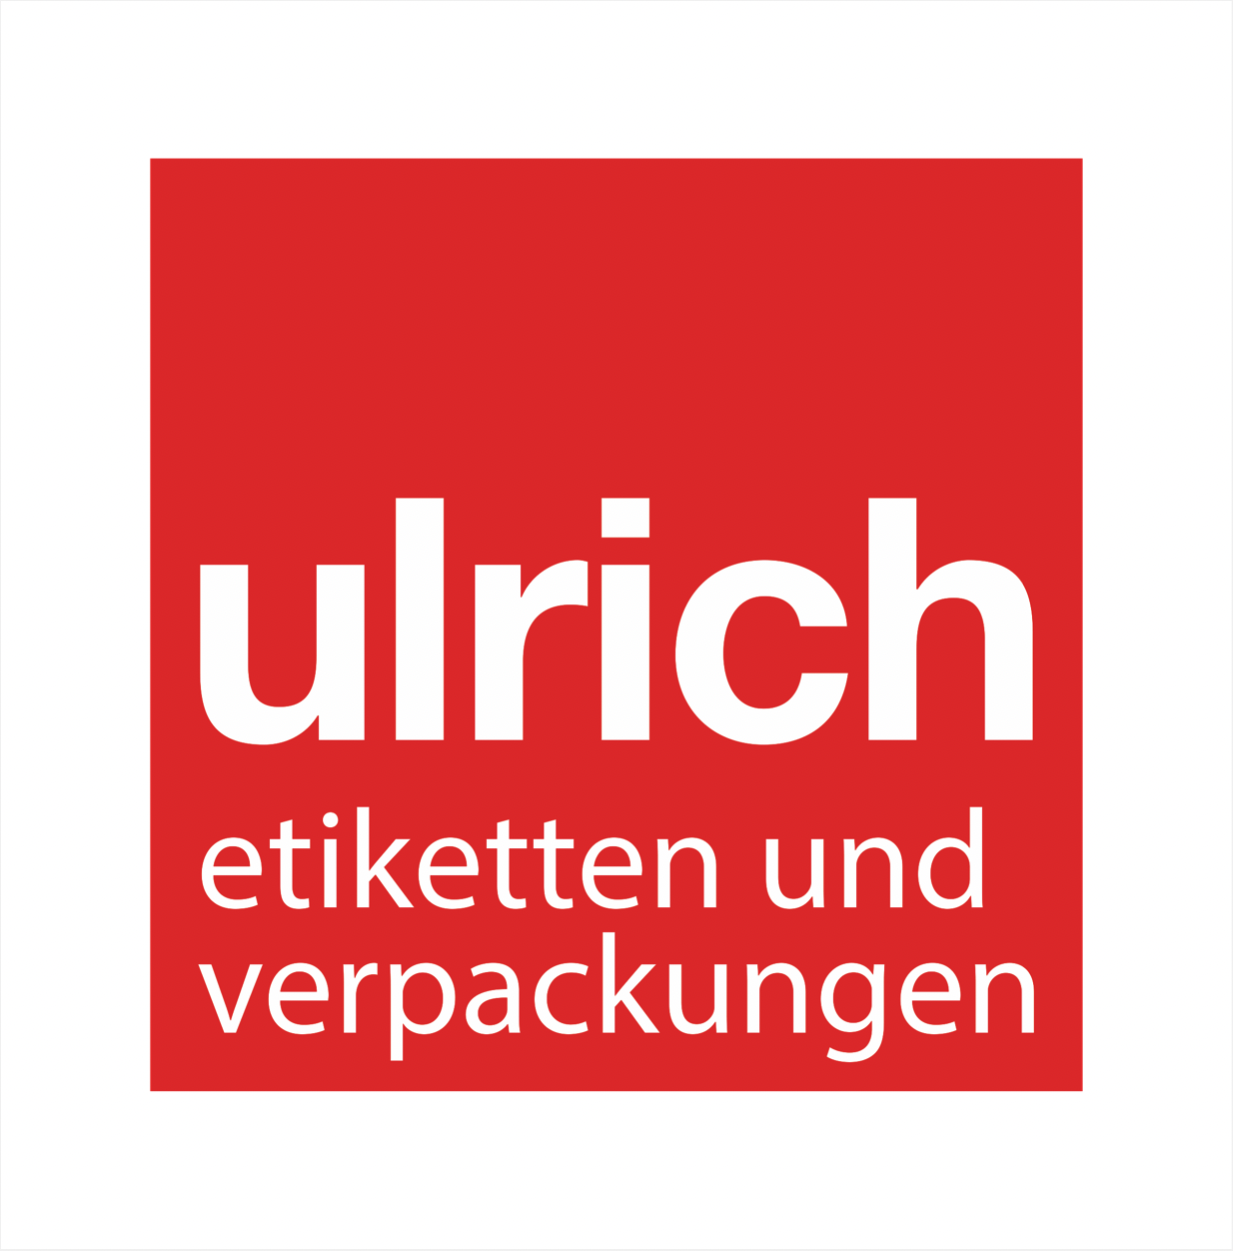 (c) Ulrich-etiketten.at